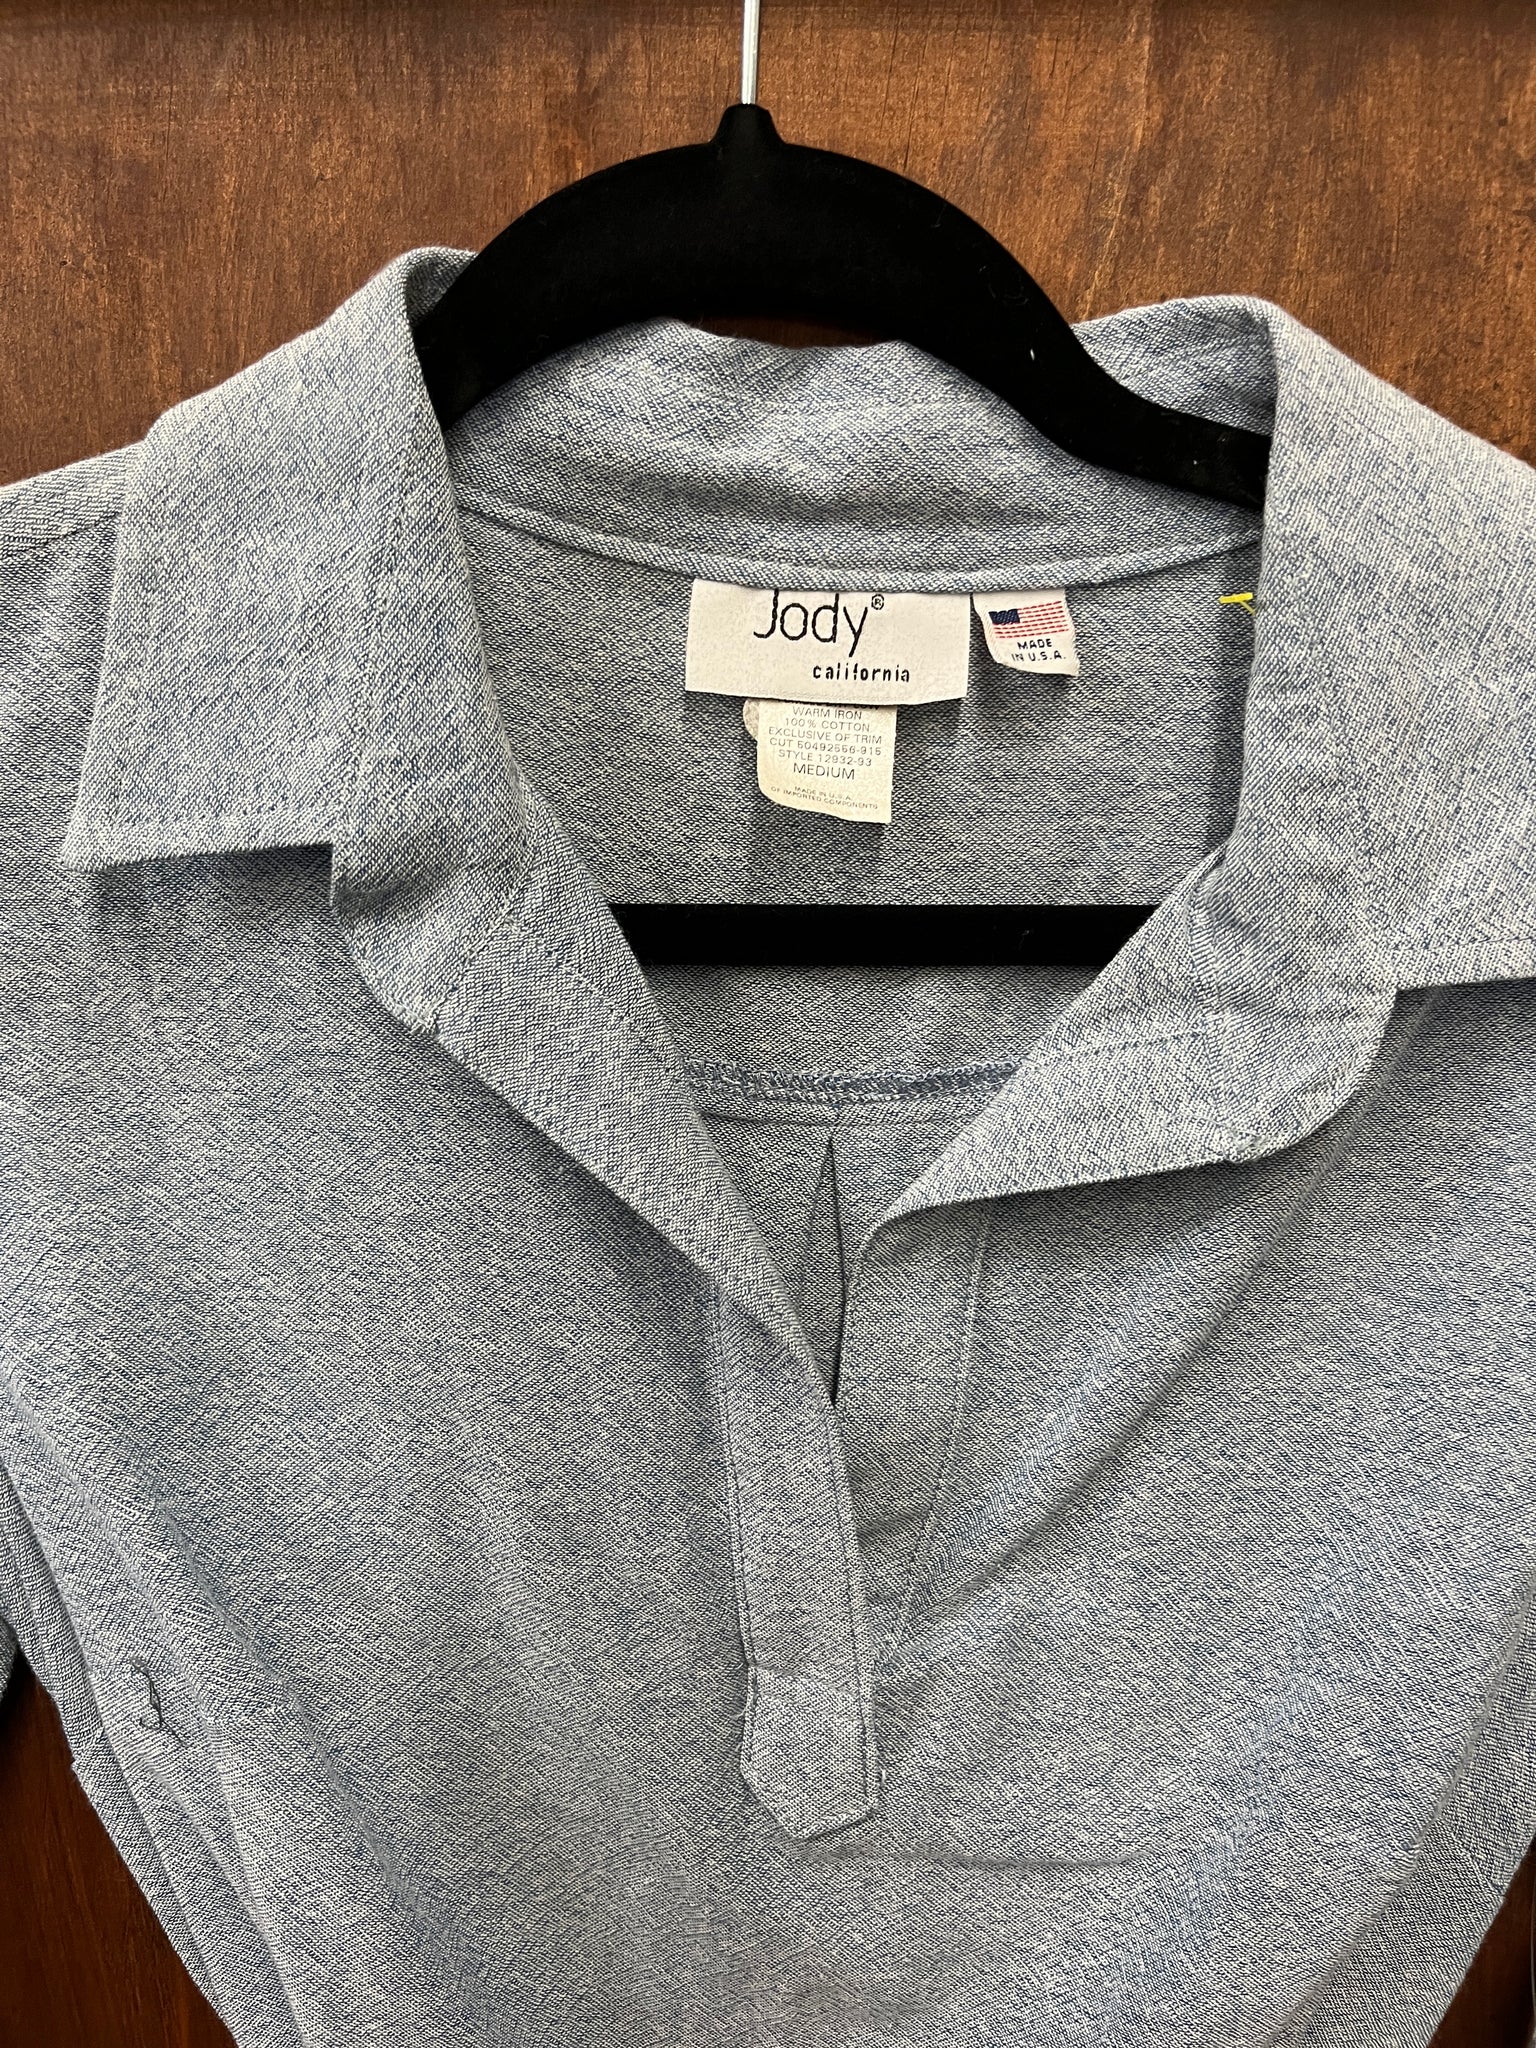 1990s DRESS- Jody California chambray shirt dress